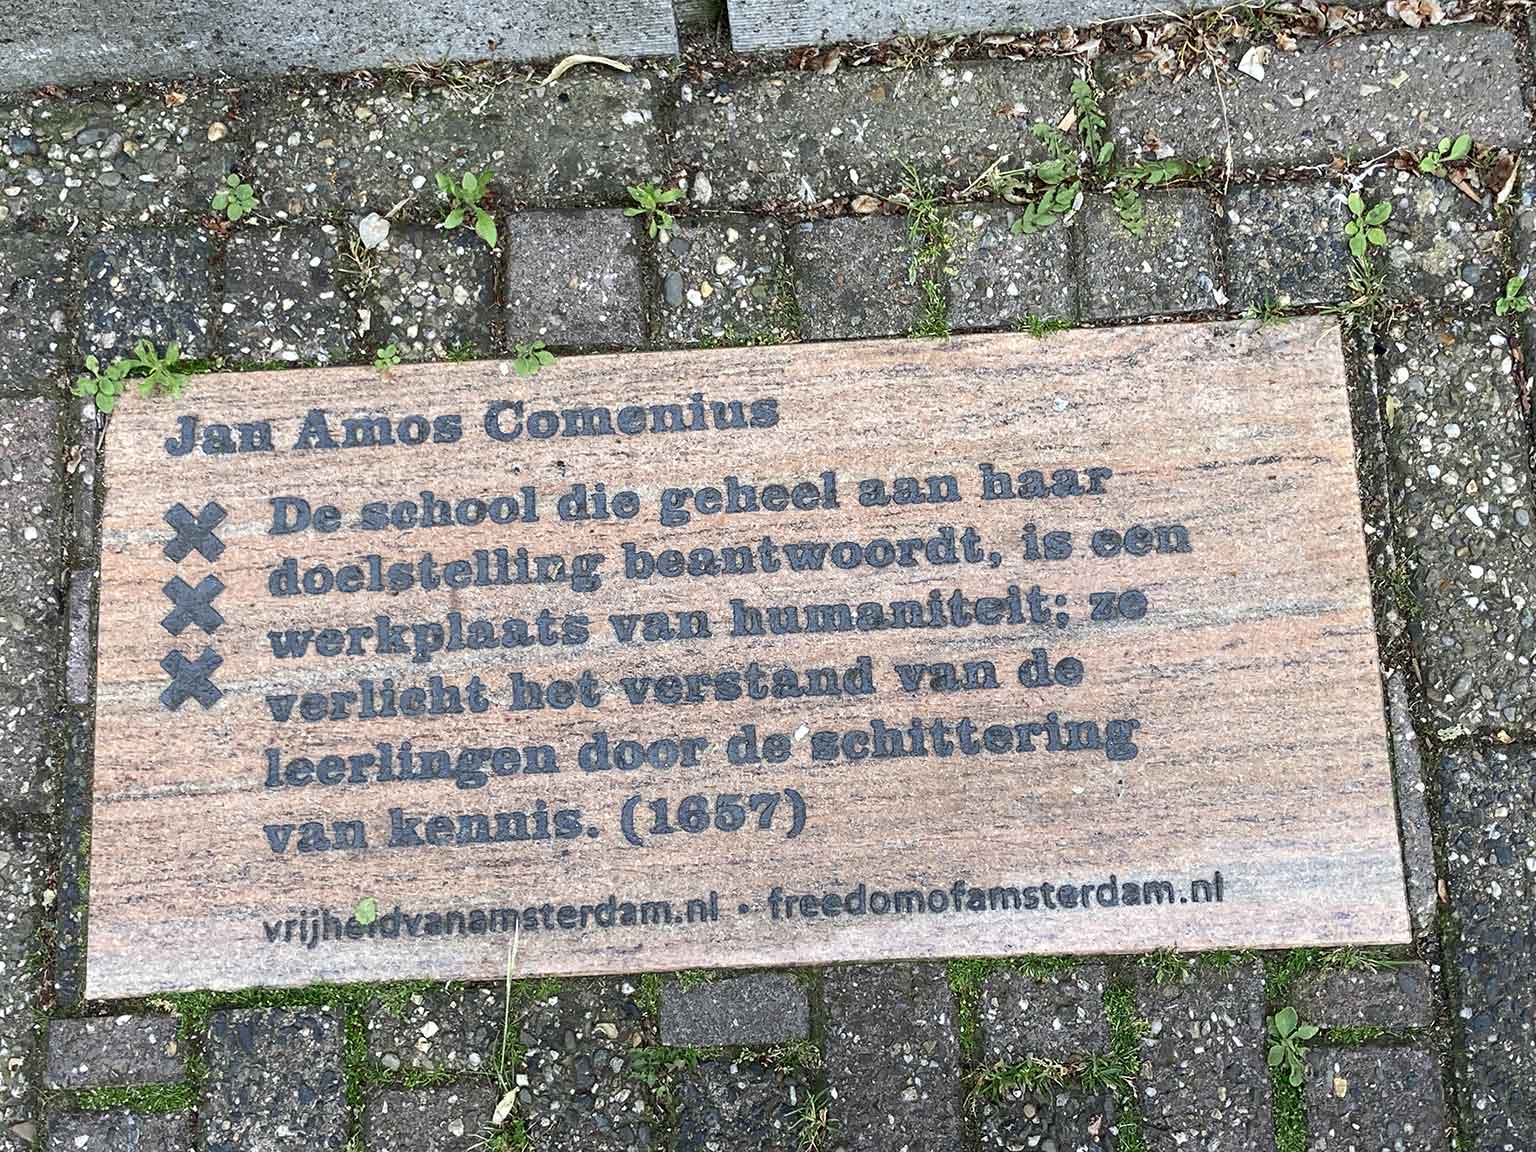 Tile in front of Huis met de Hoofden, Amsterdam, with quote from Comenius